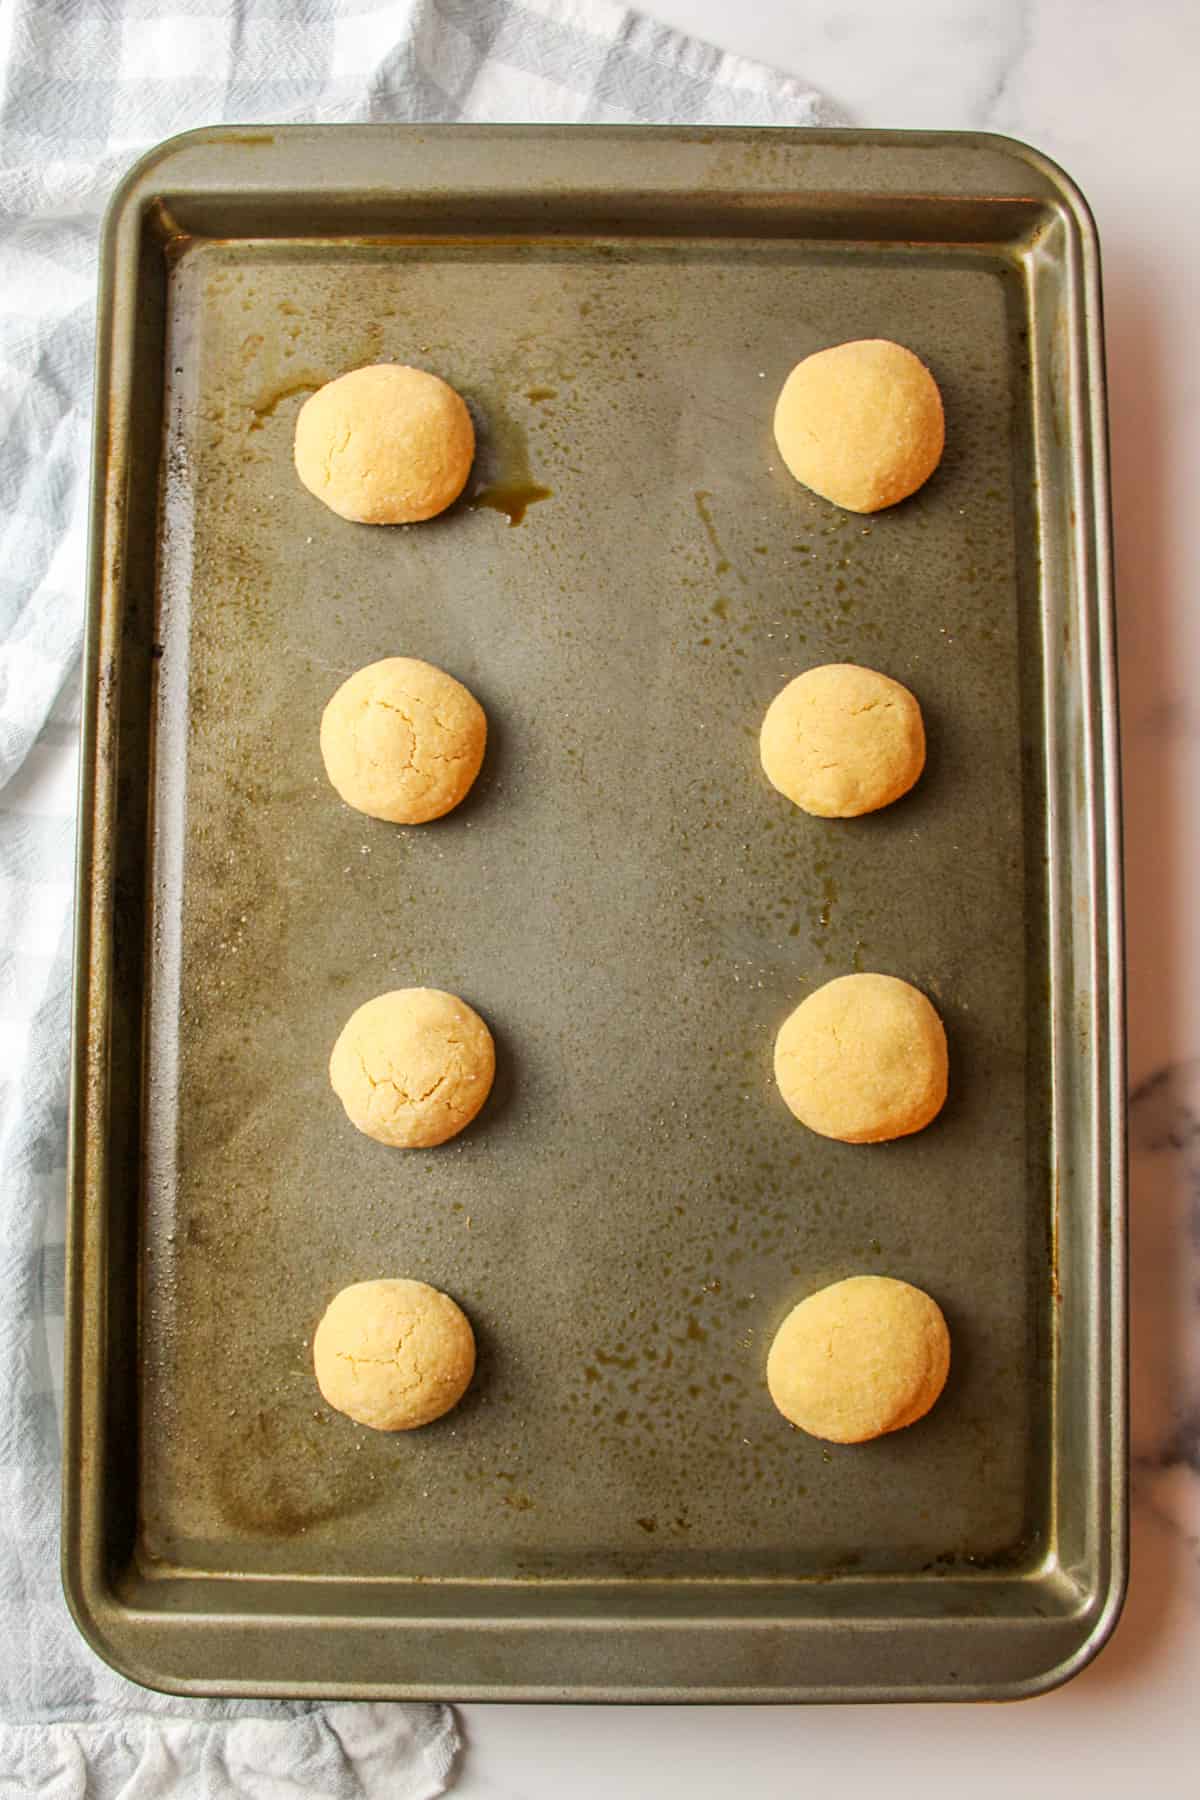 baked peanut butter dough balls on a baking sheet